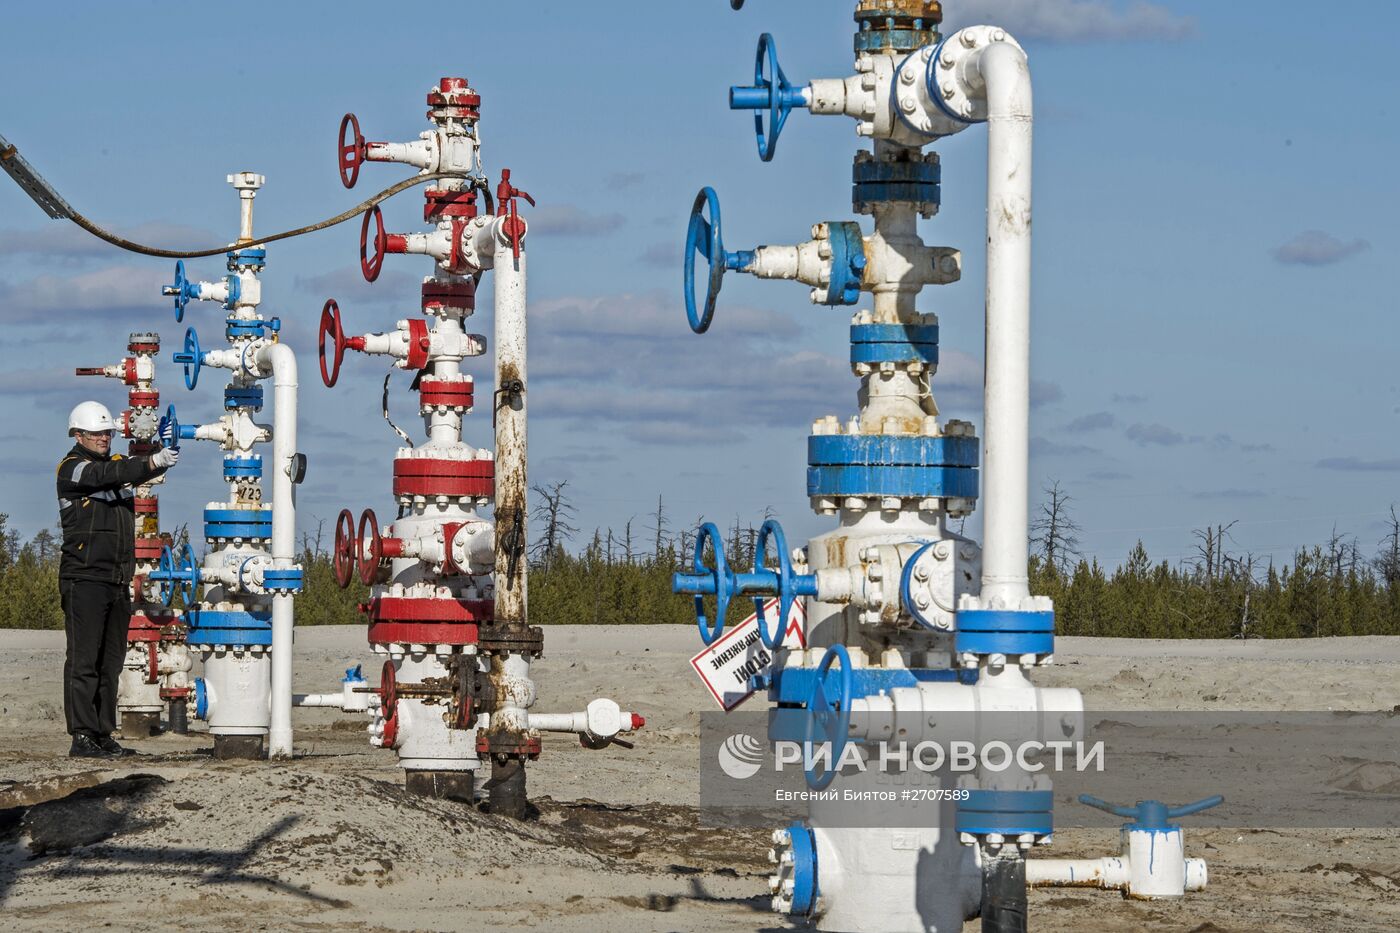 Предприятие ООО РН-Пурнефтегаз в Ямало-Ненецком автономном округе